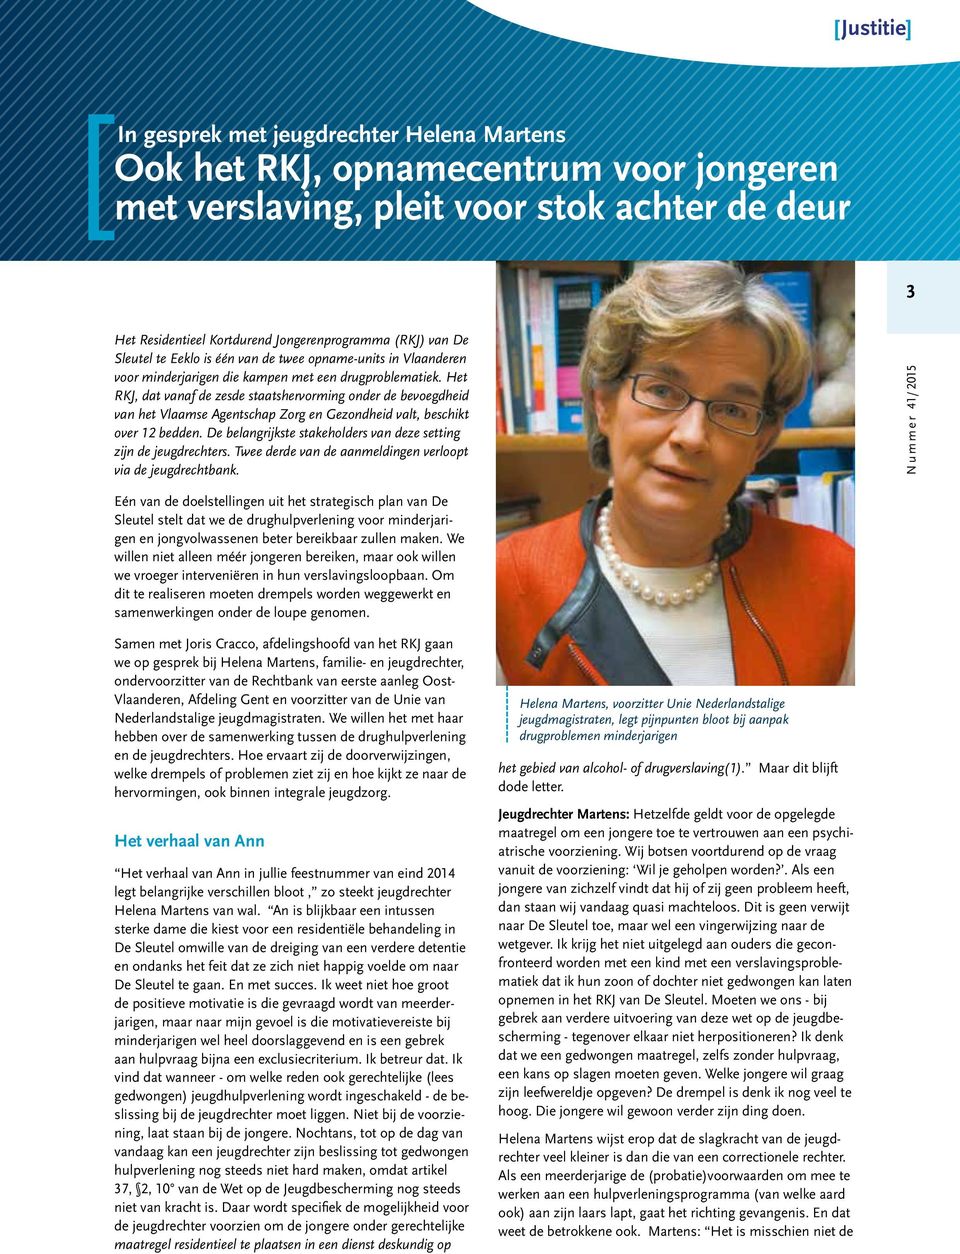 Het RKJ, dat vanaf de zesde staatshervorming onder de bevoegdheid van het Vlaamse Agentschap Zorg en Gezondheid valt, beschikt over 12 bedden.